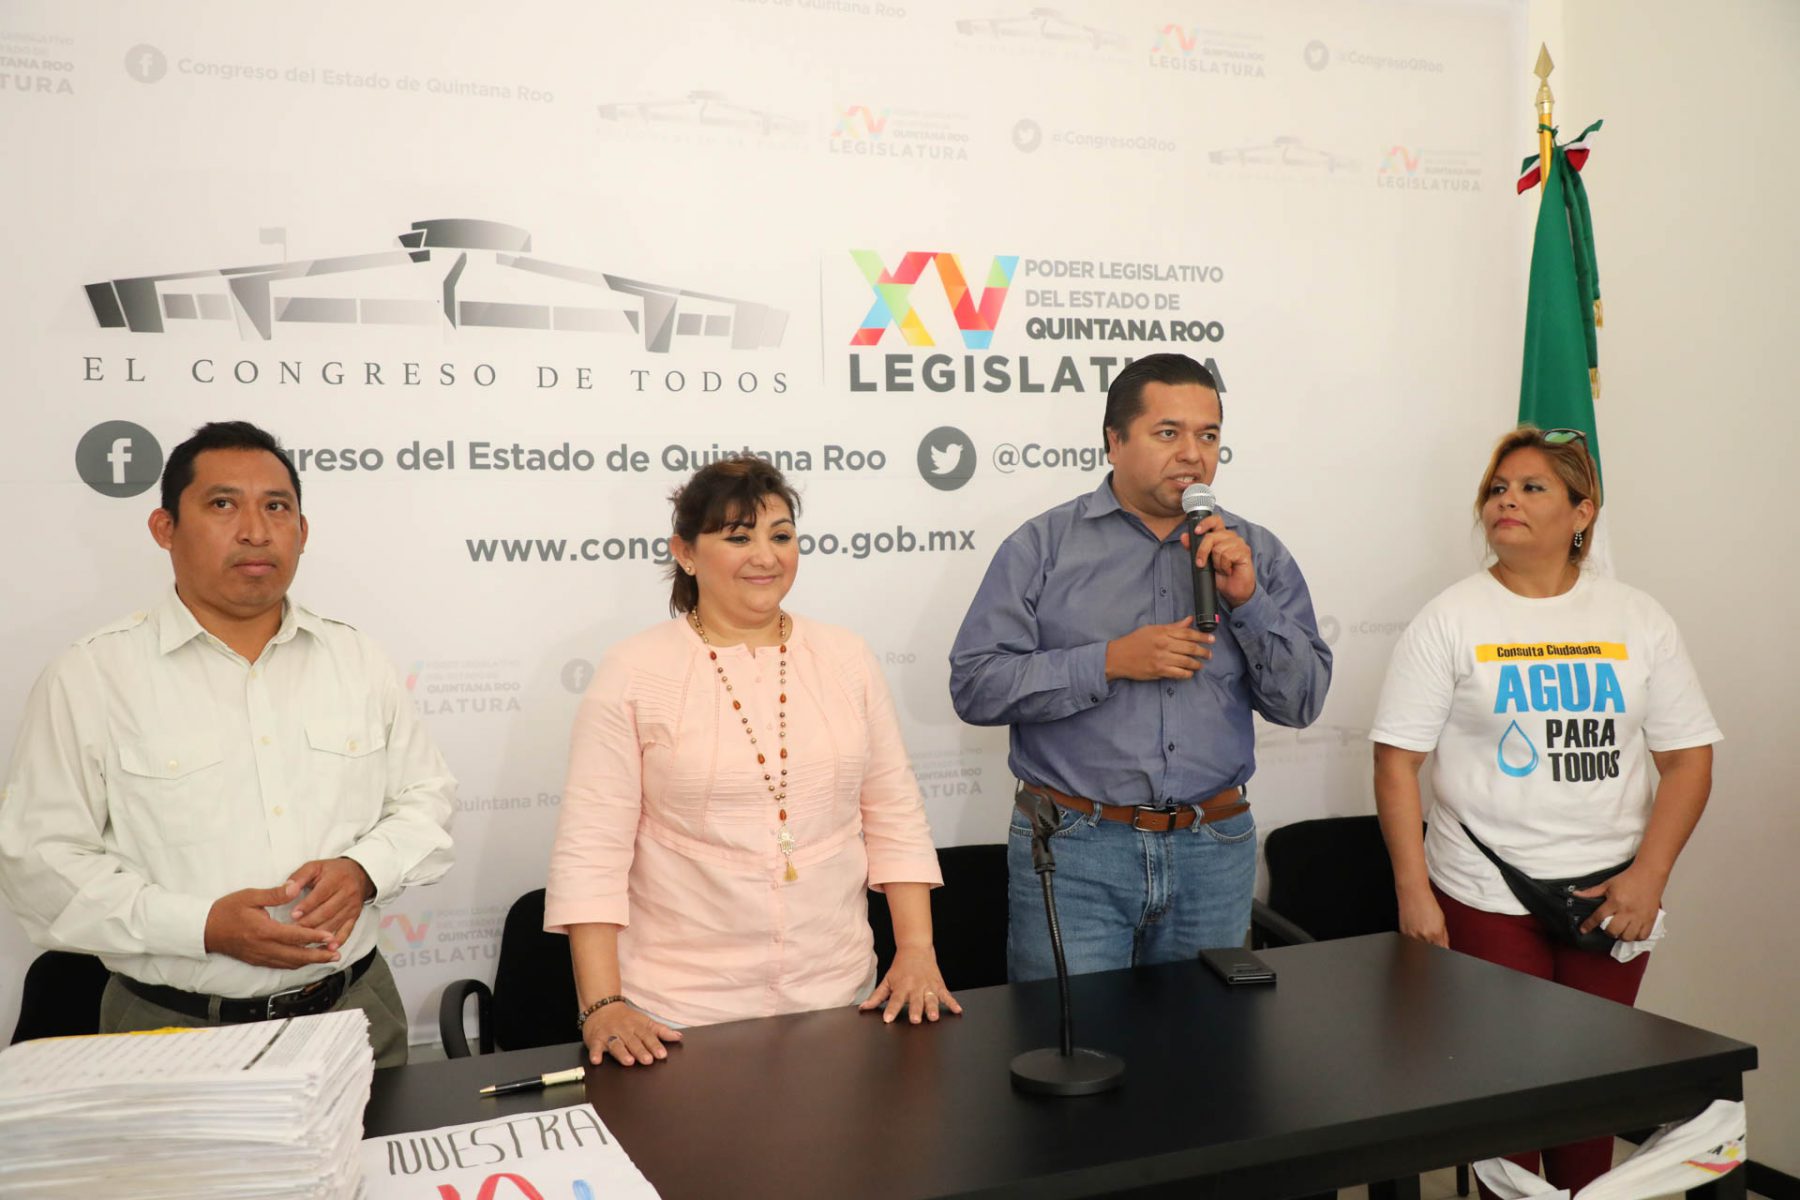 Los diputados Emiliano Ramos Hernández y Eugenia Solís Salazar, recibieron una iniciativa ciudadana para reformar la Ley de Cuotas y Tarifas de Agua Potable del Estado de Quintana Roo.